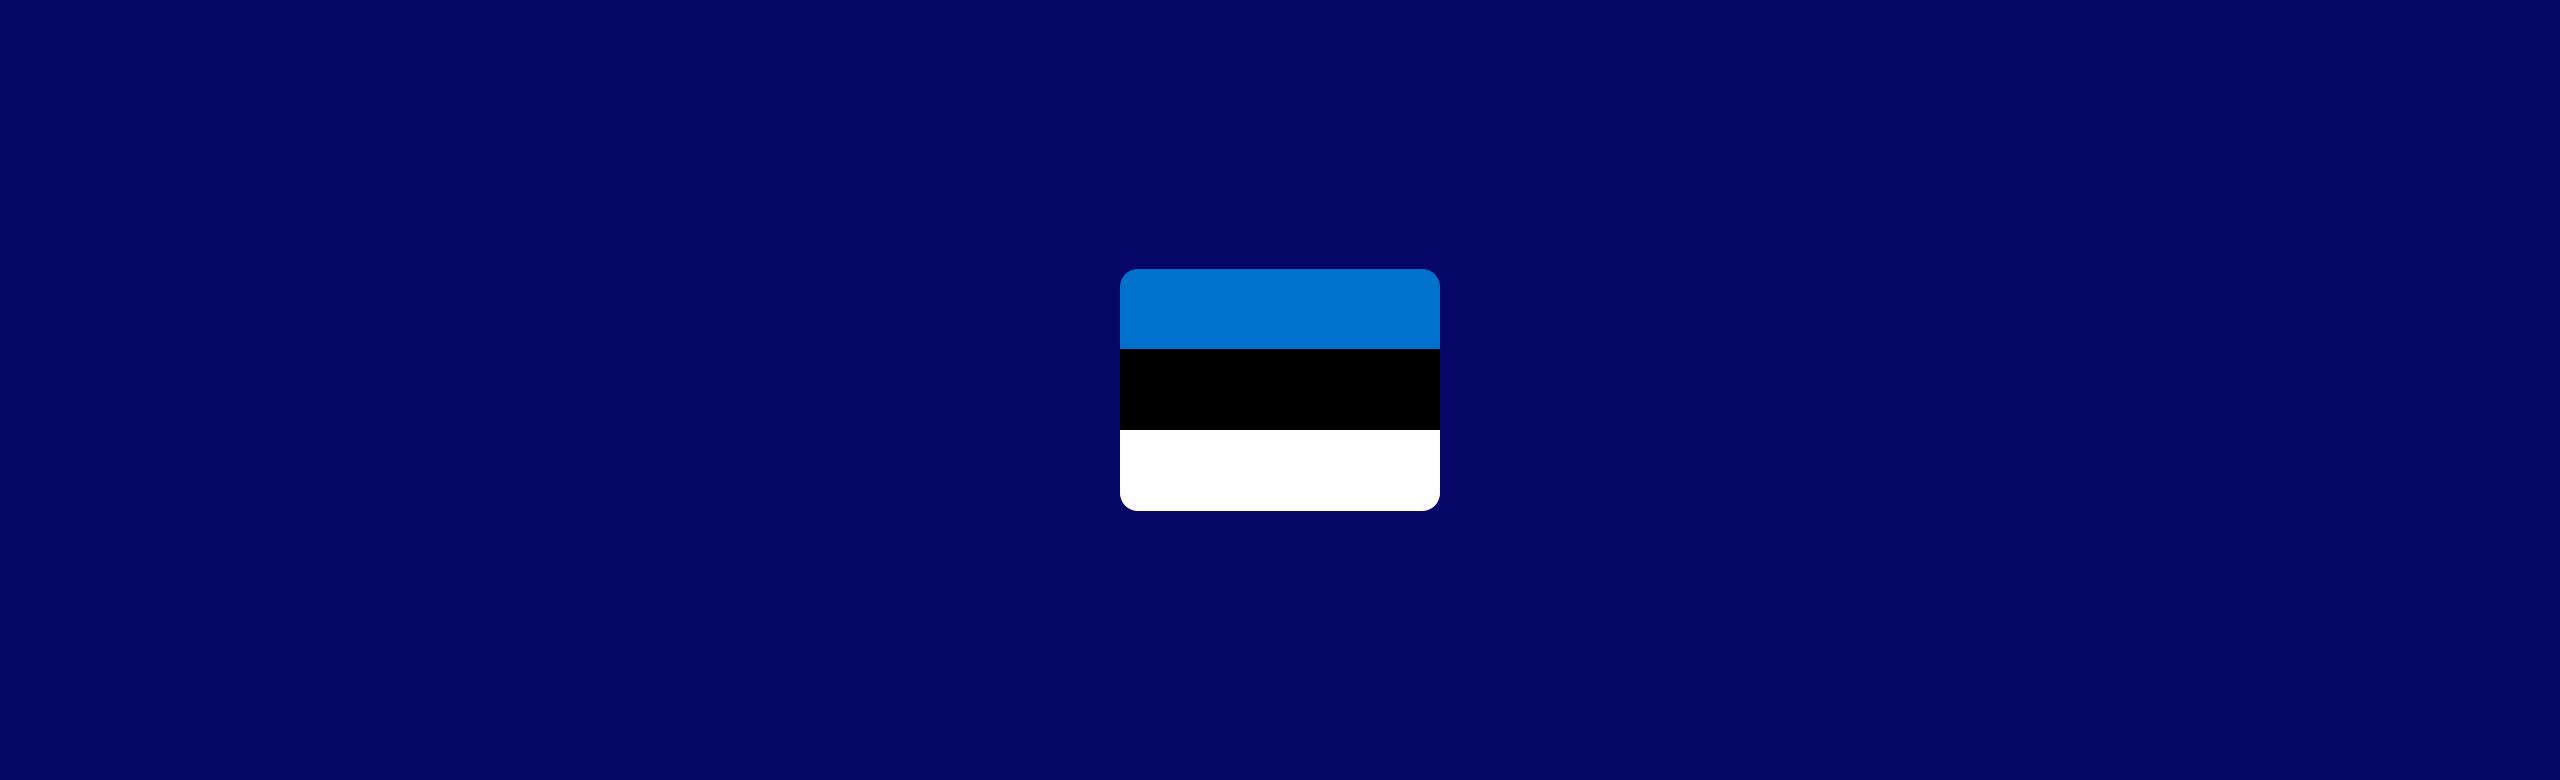 bandeira estonia